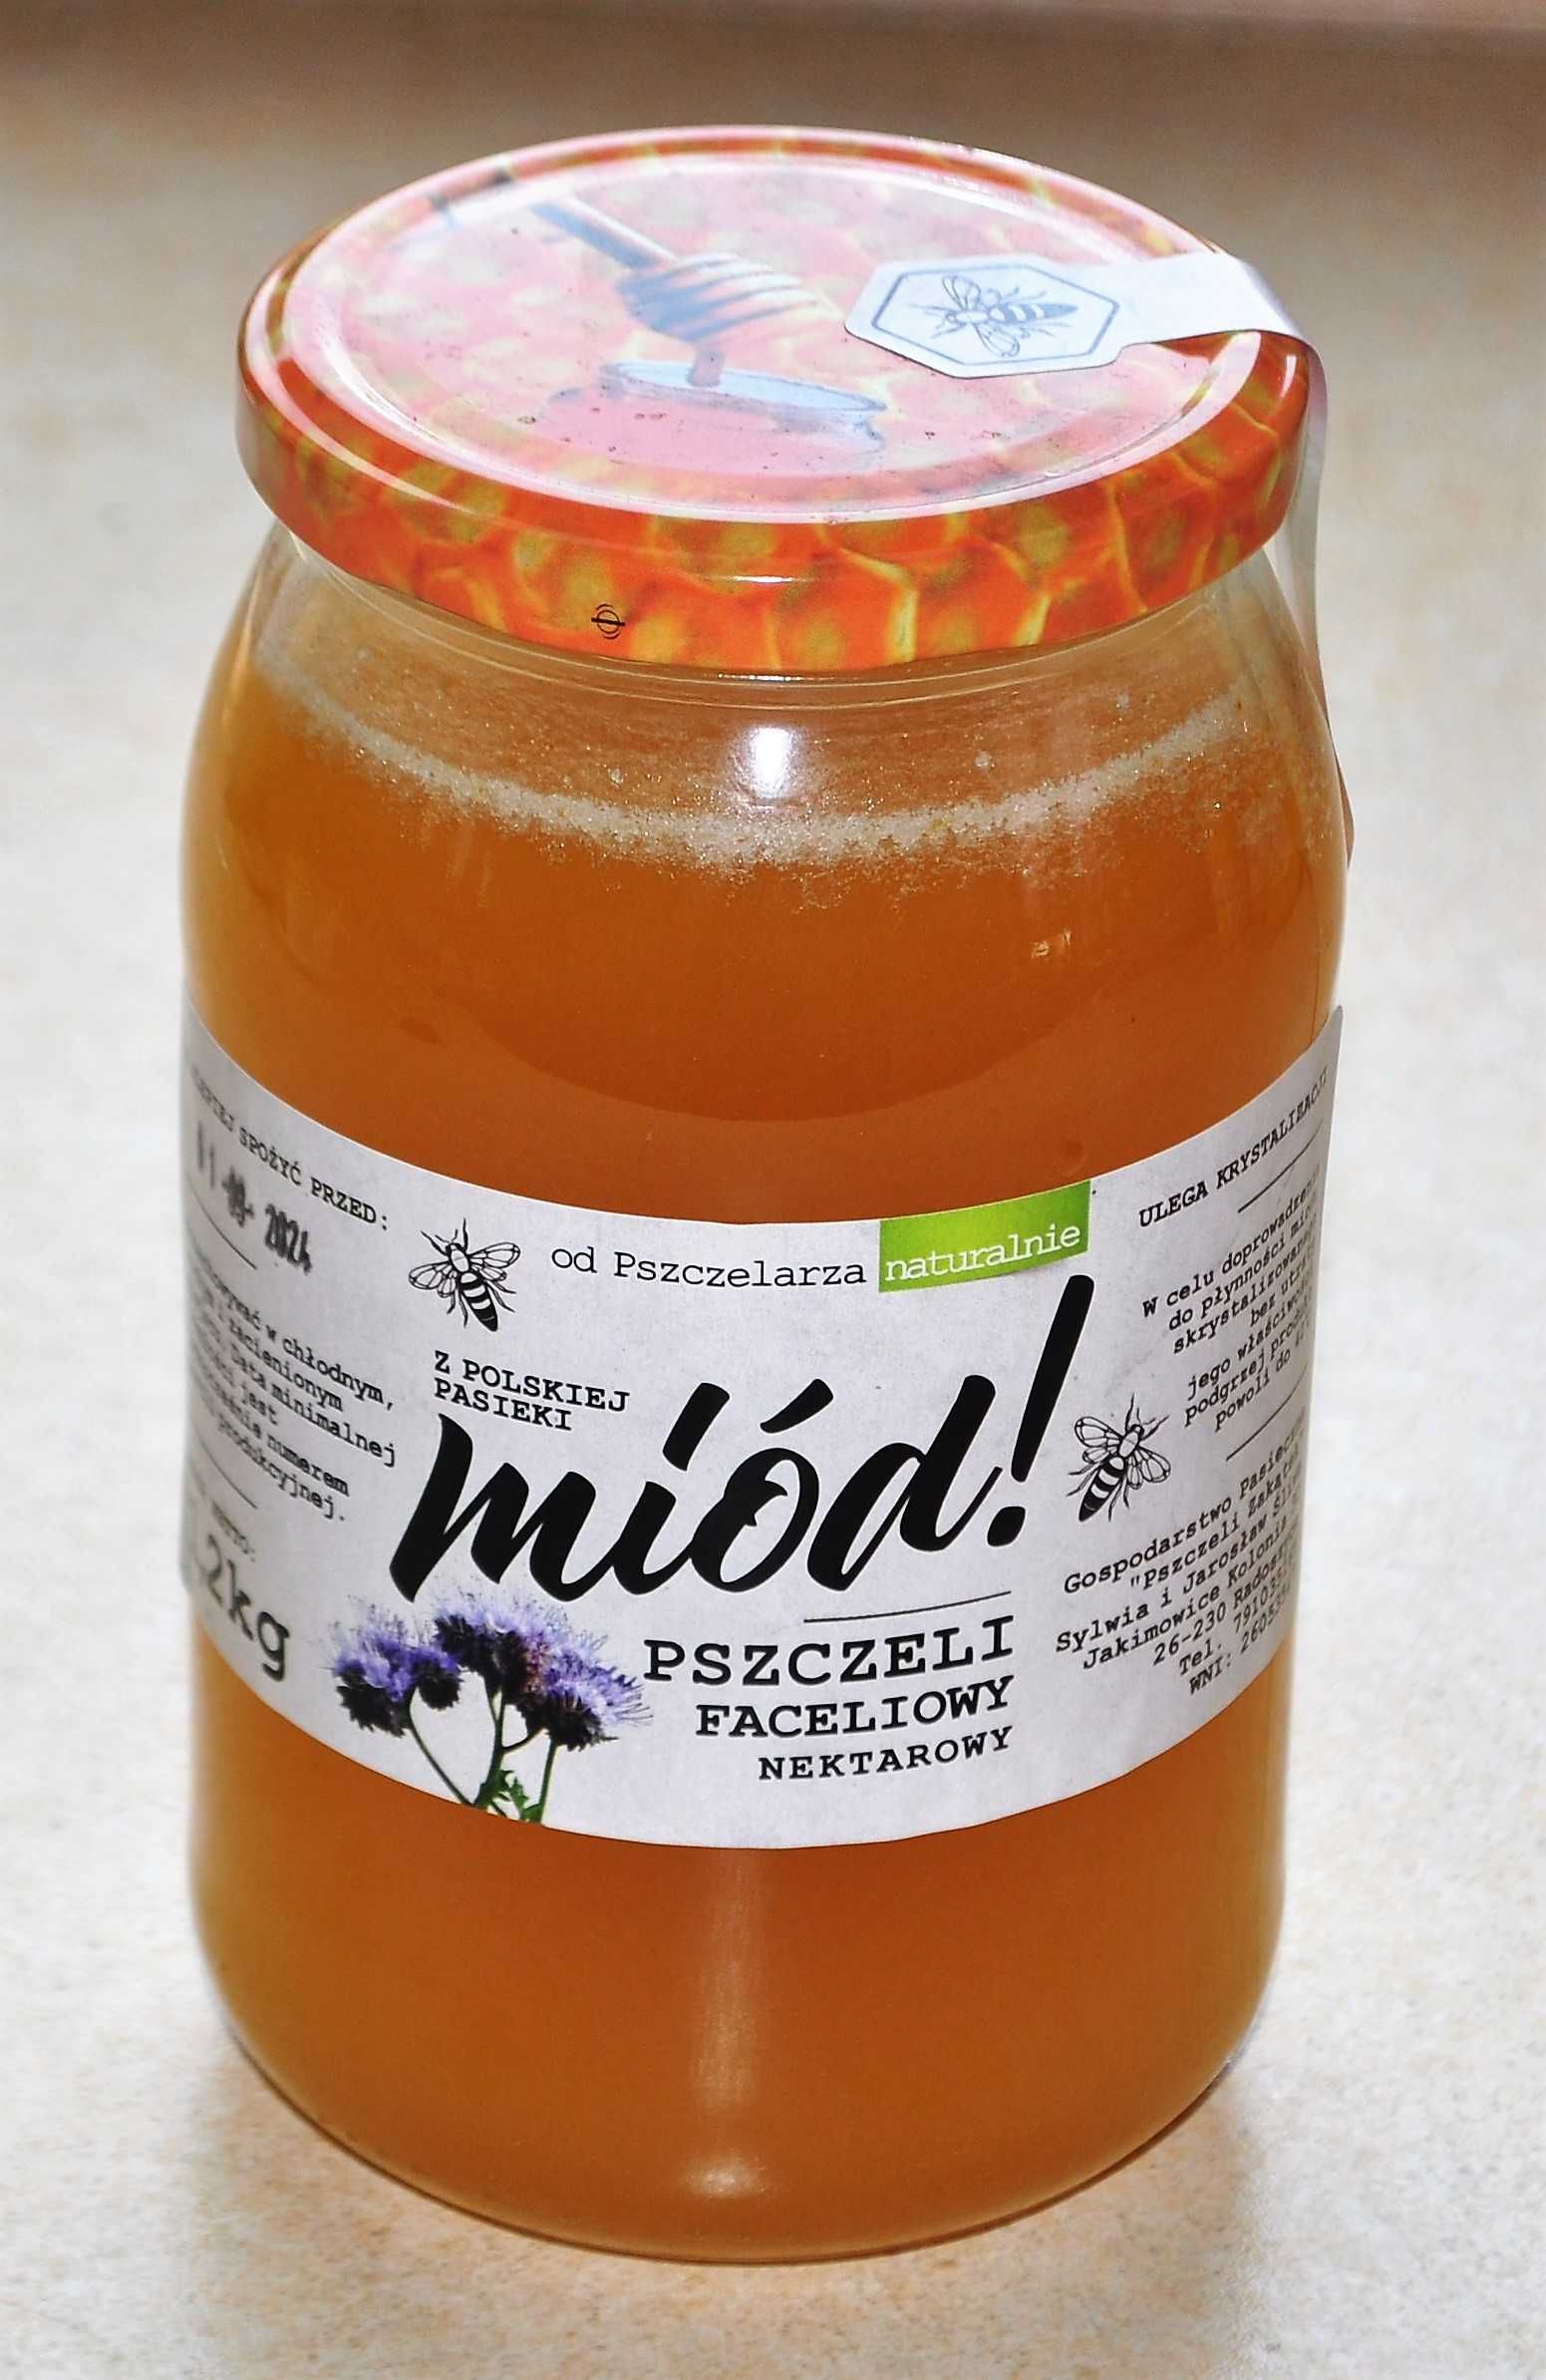 Miód Rzepakowy 1,2kg - miody z własnej pasieki! Produkty pszczele!